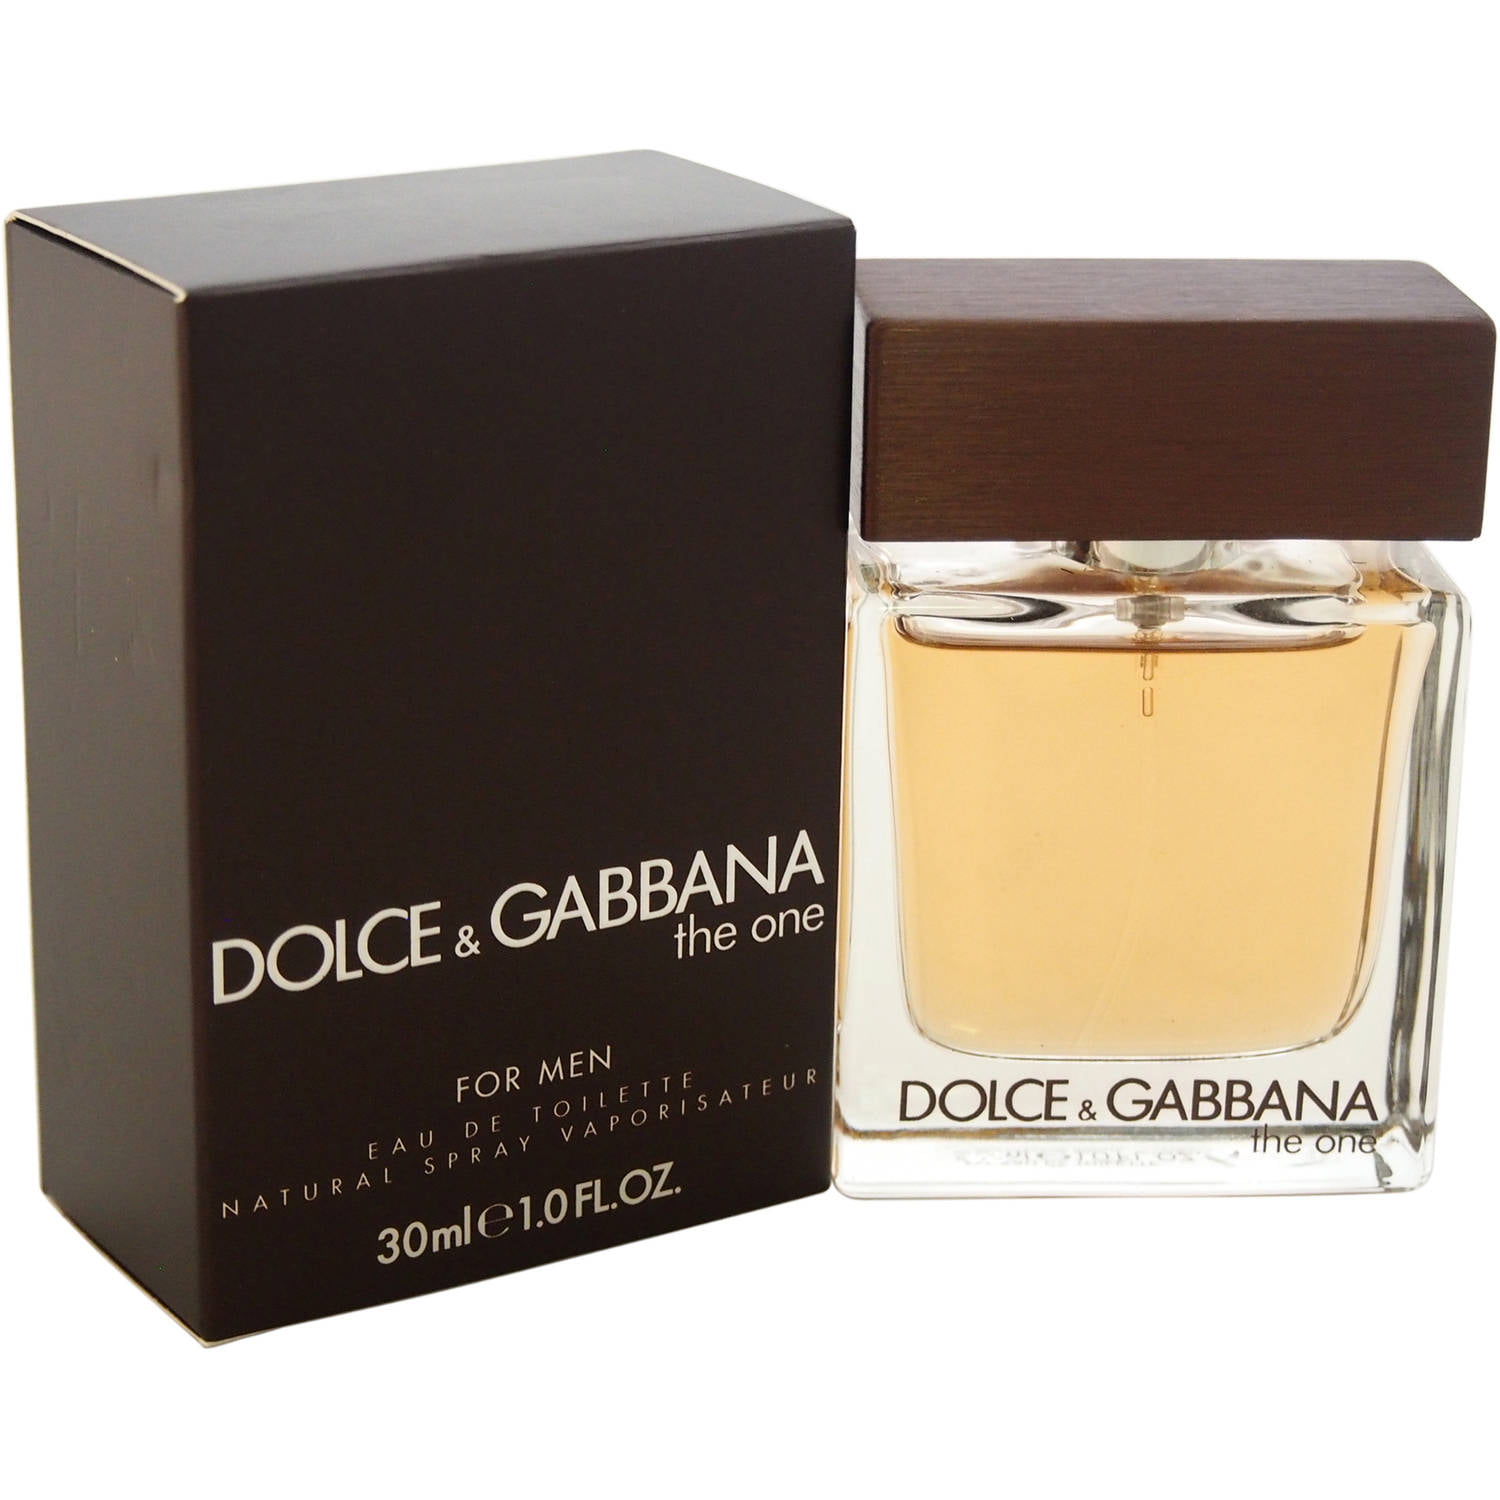 Dolce & Gabbana The One Eau de Toilette, Cologne for Men, 1 Oz Full ...